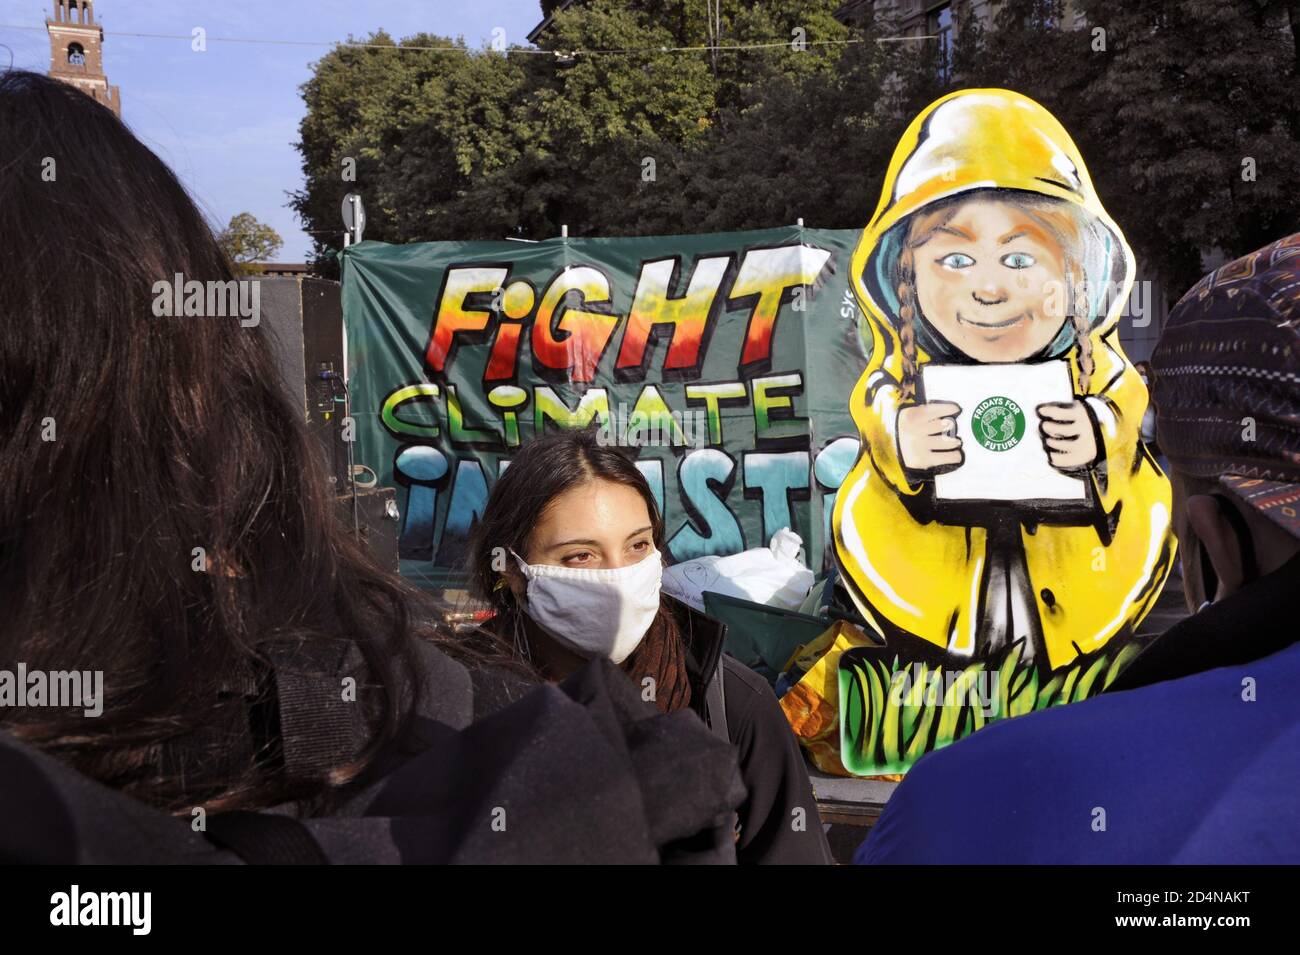 Mailand (Italien), Oktober 2020, die Jugendlichen von Freitag für die Zukunft, nach der Unterbrechung durch Covid 19 Epidemie, Rückkehr auf die Straße, um gegen den Klimawandel zu protestieren, versuchen, gesunde Sicherheitsmaßnahmen zu respektieren. Stockfoto